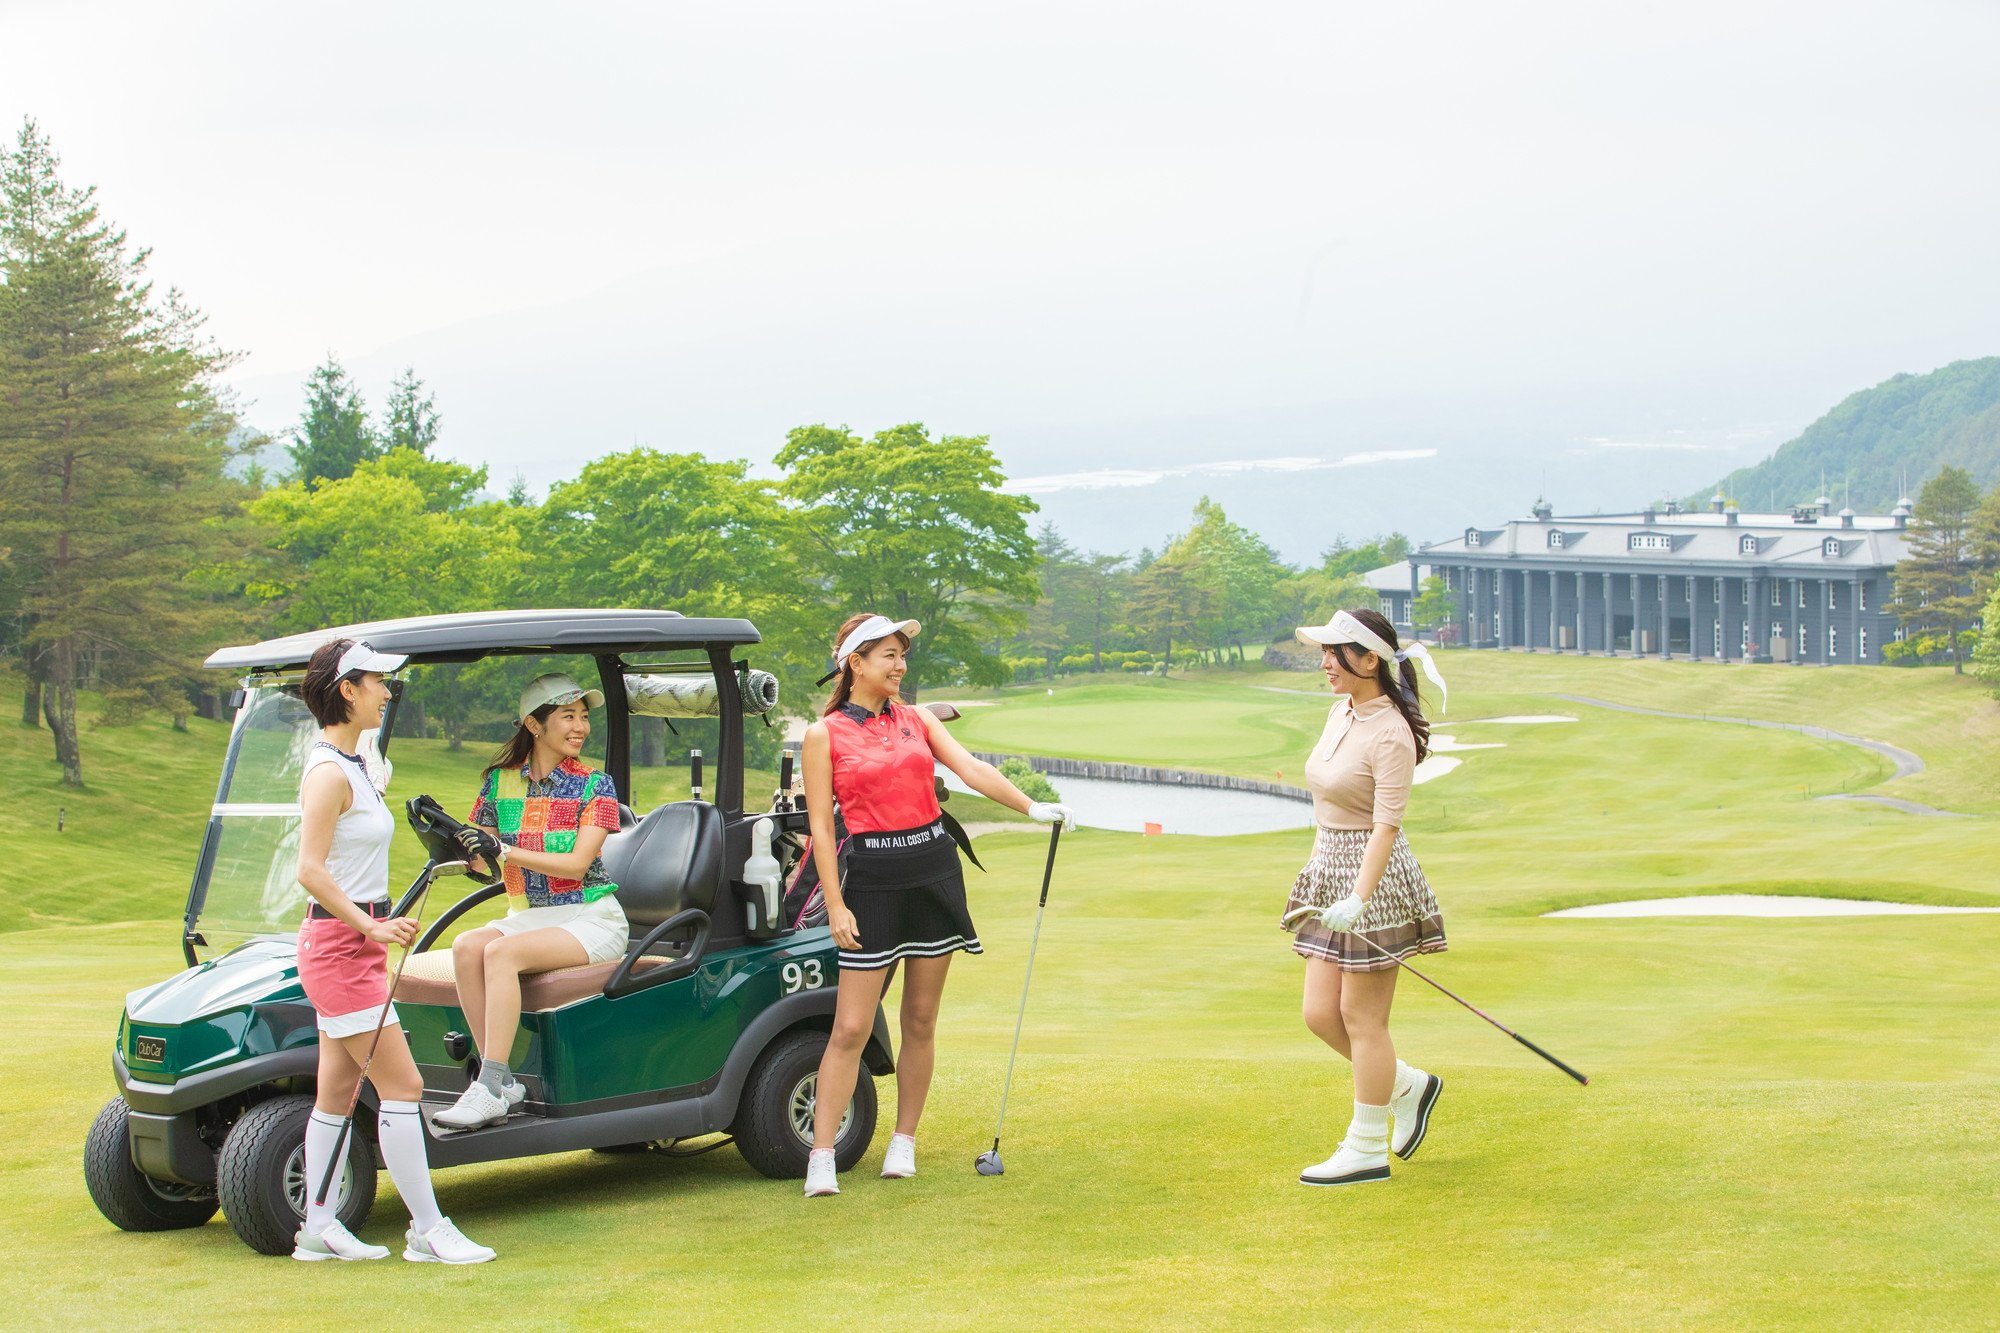 ゴルフ・ワーク・リゾートステイが
シームレスにつながる
オーソルヴェール軽井沢倶楽部